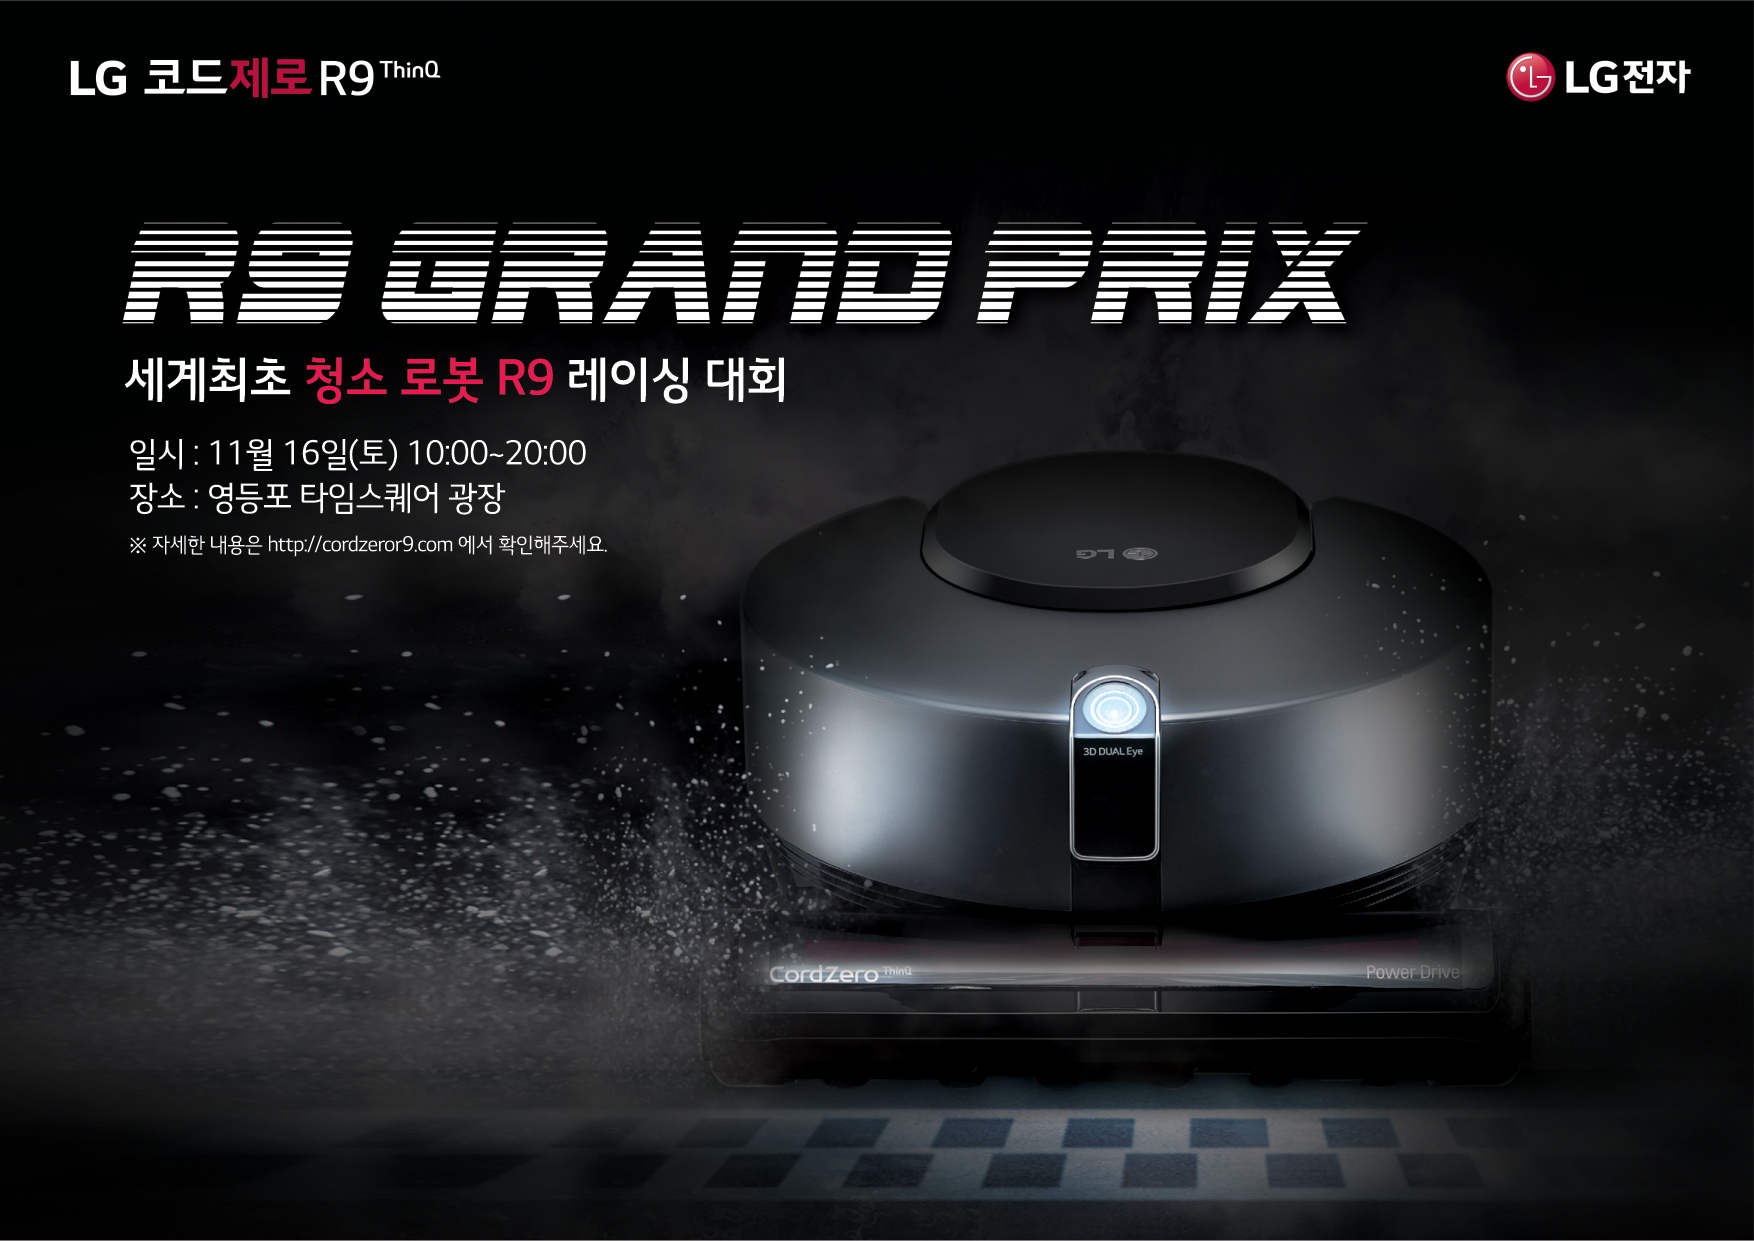  로봇청소기 레이싱 대회 '2019 LG 코드제로 R9 그랑프리' 행사 포스터